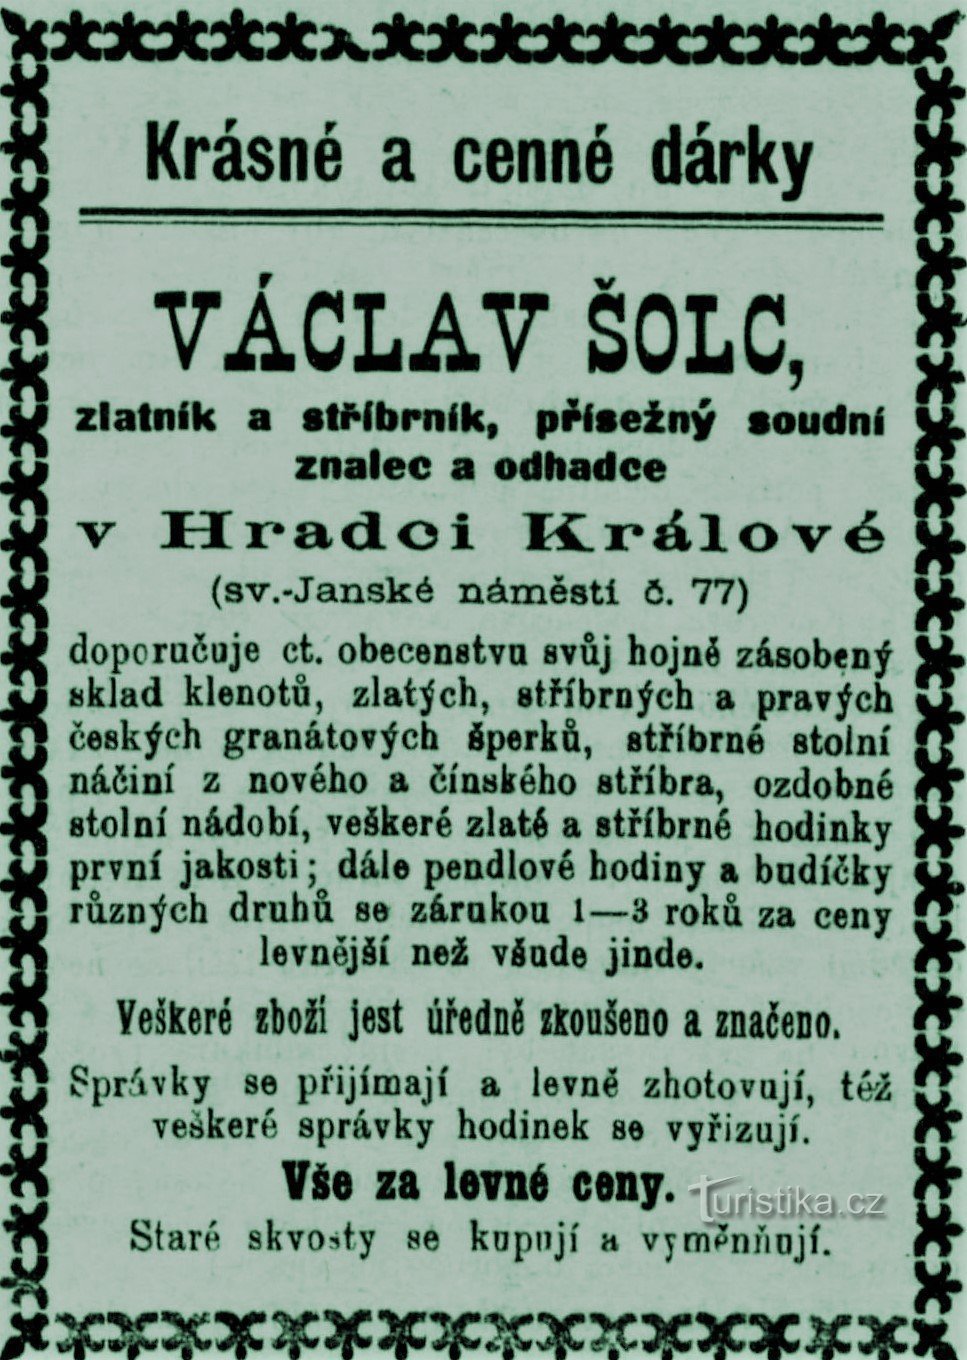 Σύγχρονη διαφήμιση του χρυσοχόου Václav Šolec από το Hradec Králové από το 1899